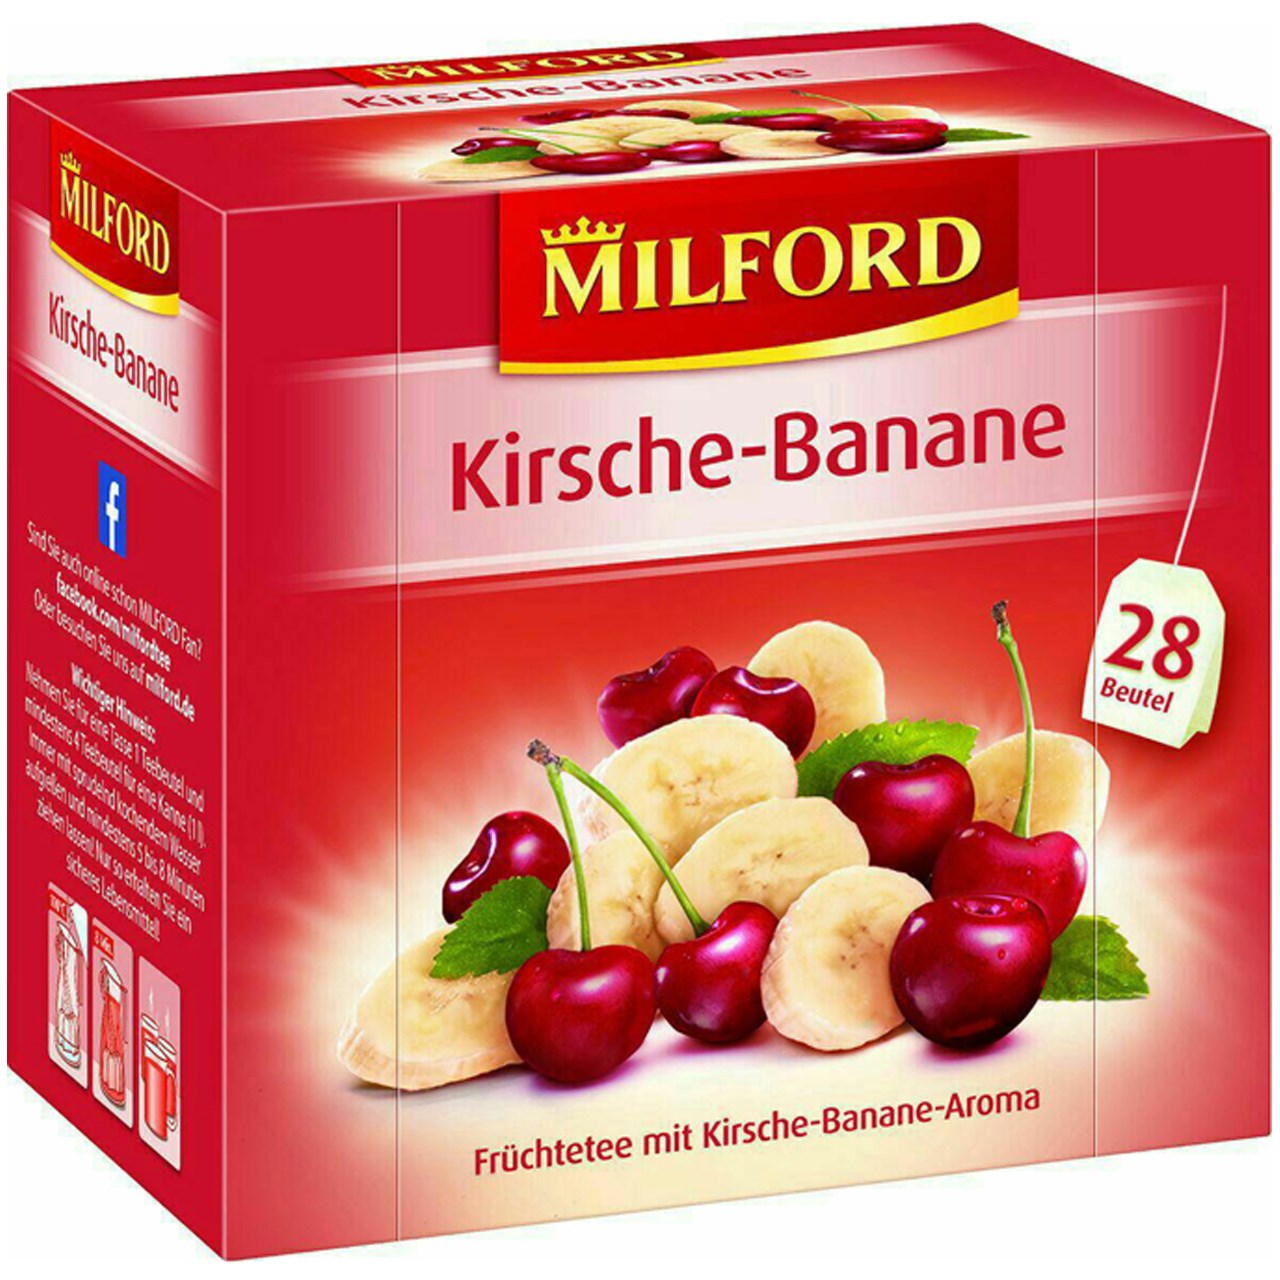 بسته دمنوش میوه ای میلفورد مدل Kirsche - Banane